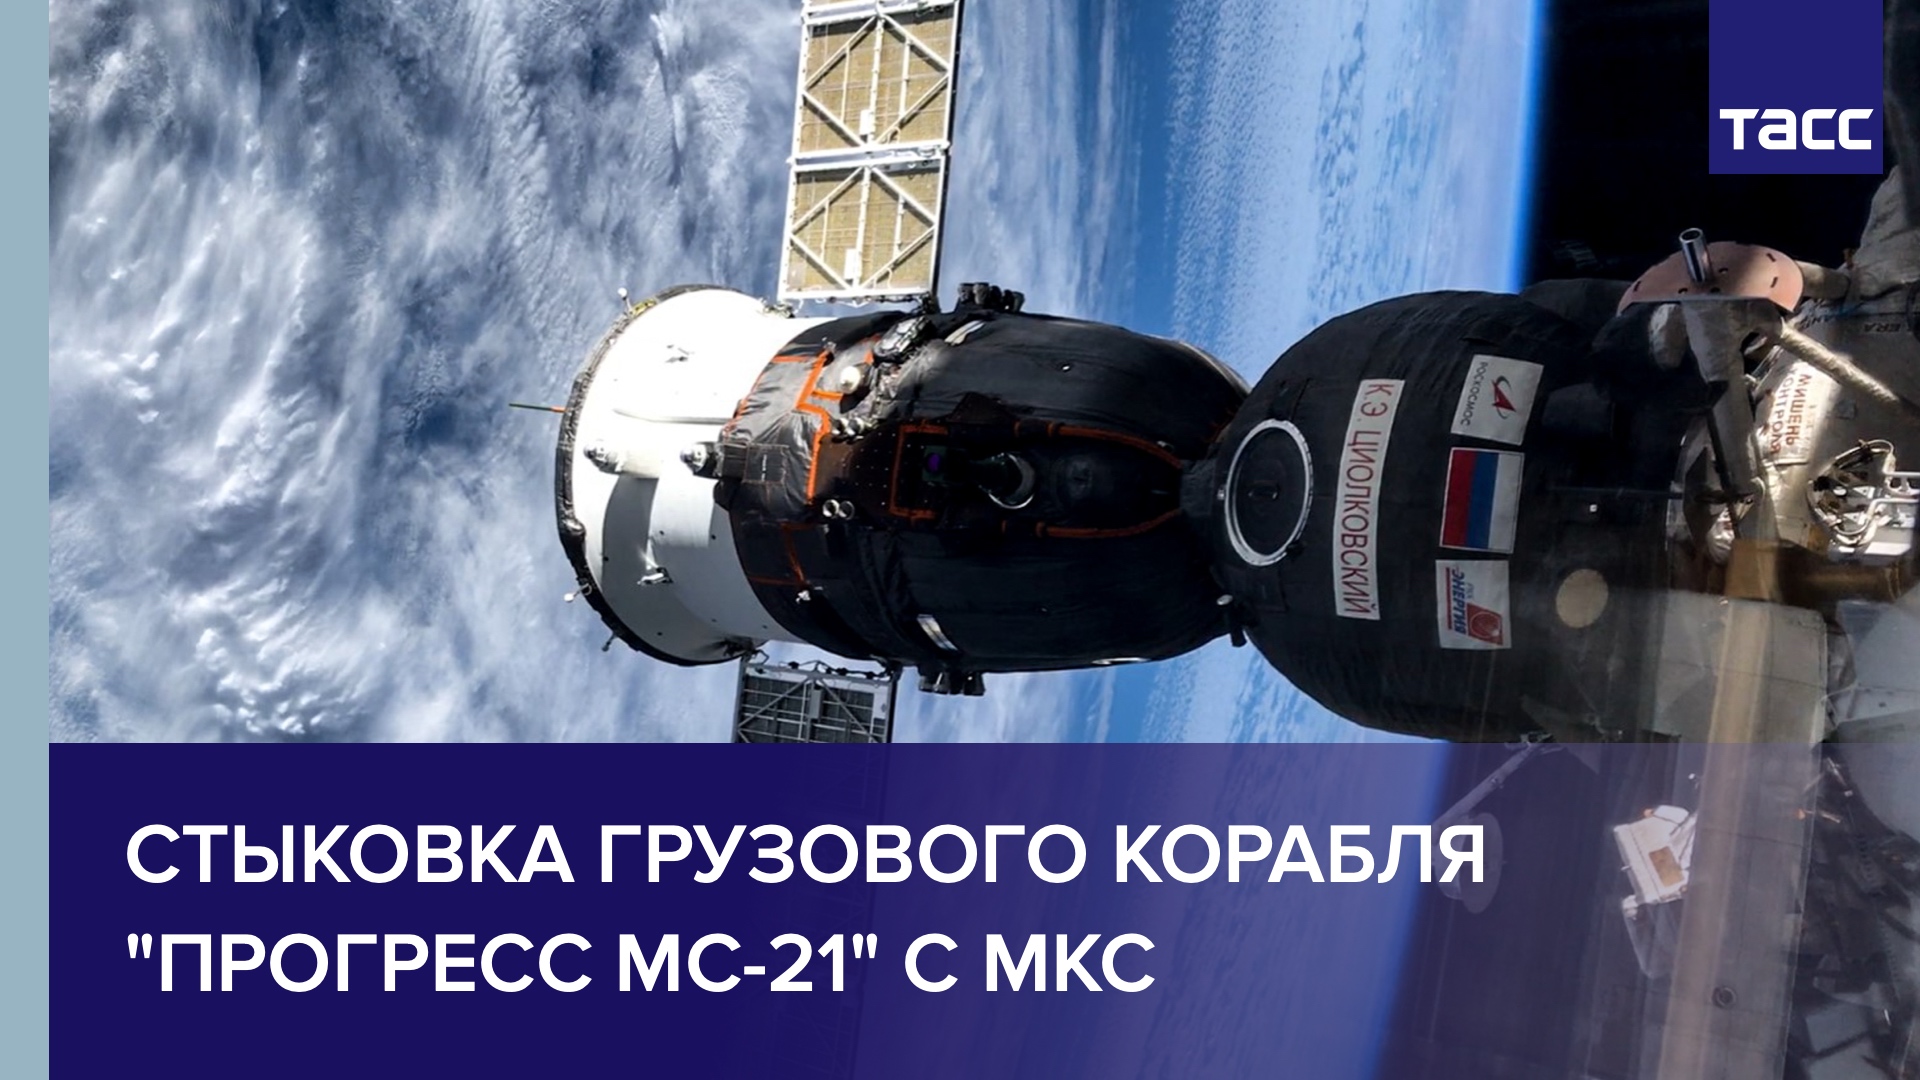 Стыковка грузового корабля "Прогресс МС-21" с МКС